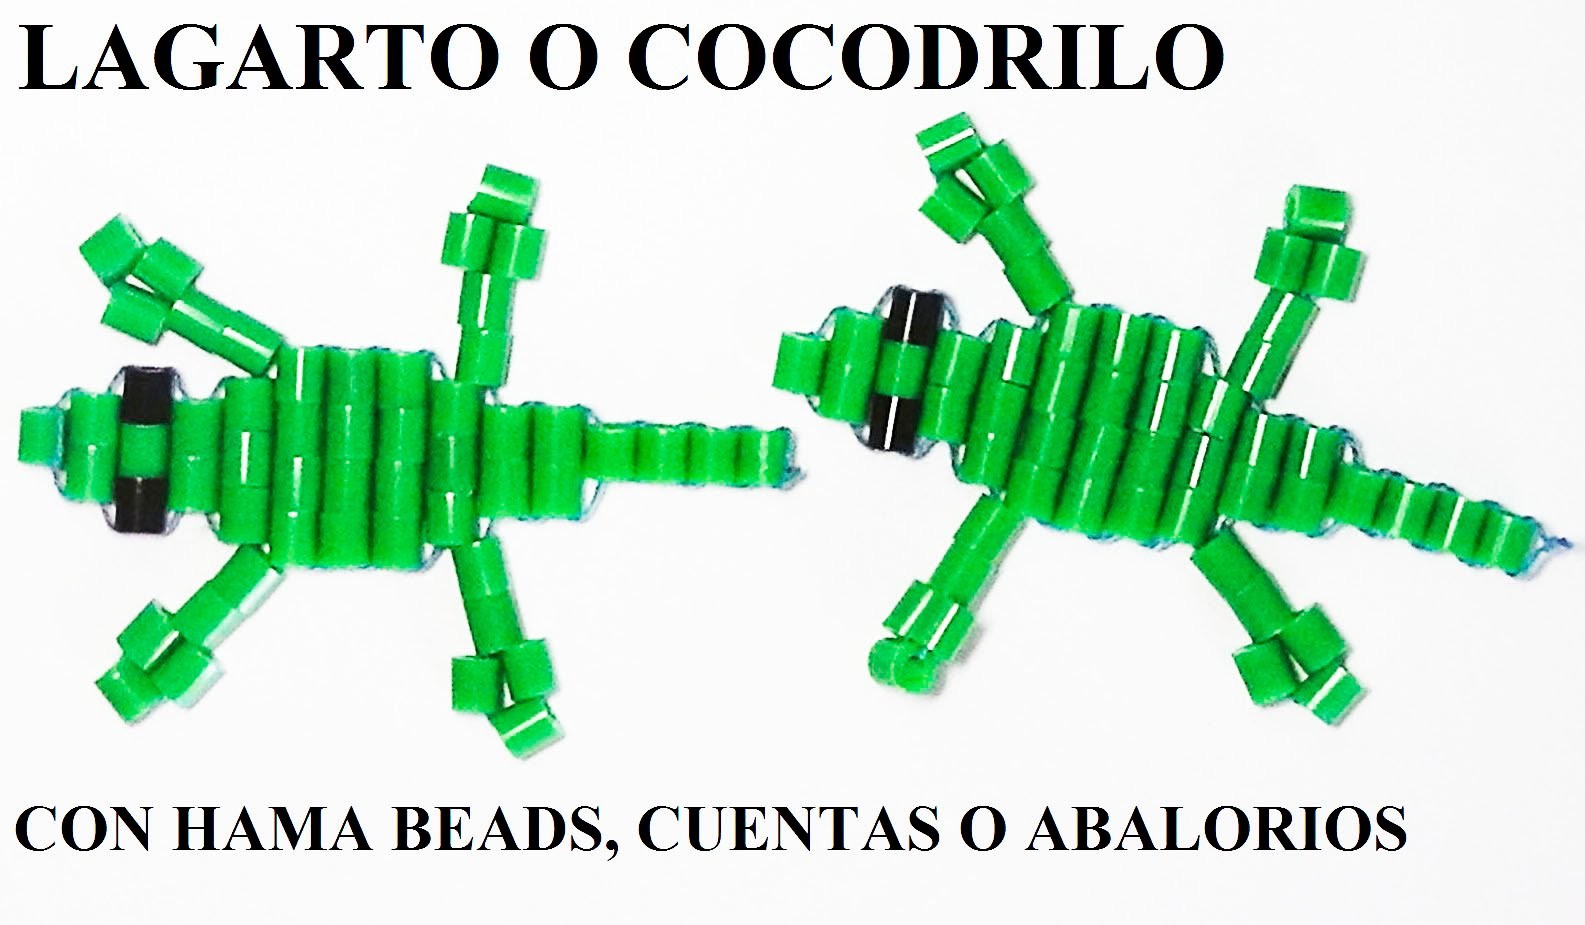 Como hacer un cocodrilo o lagarto con hama beads, cuentas o abalorios articulado, sin planchar.